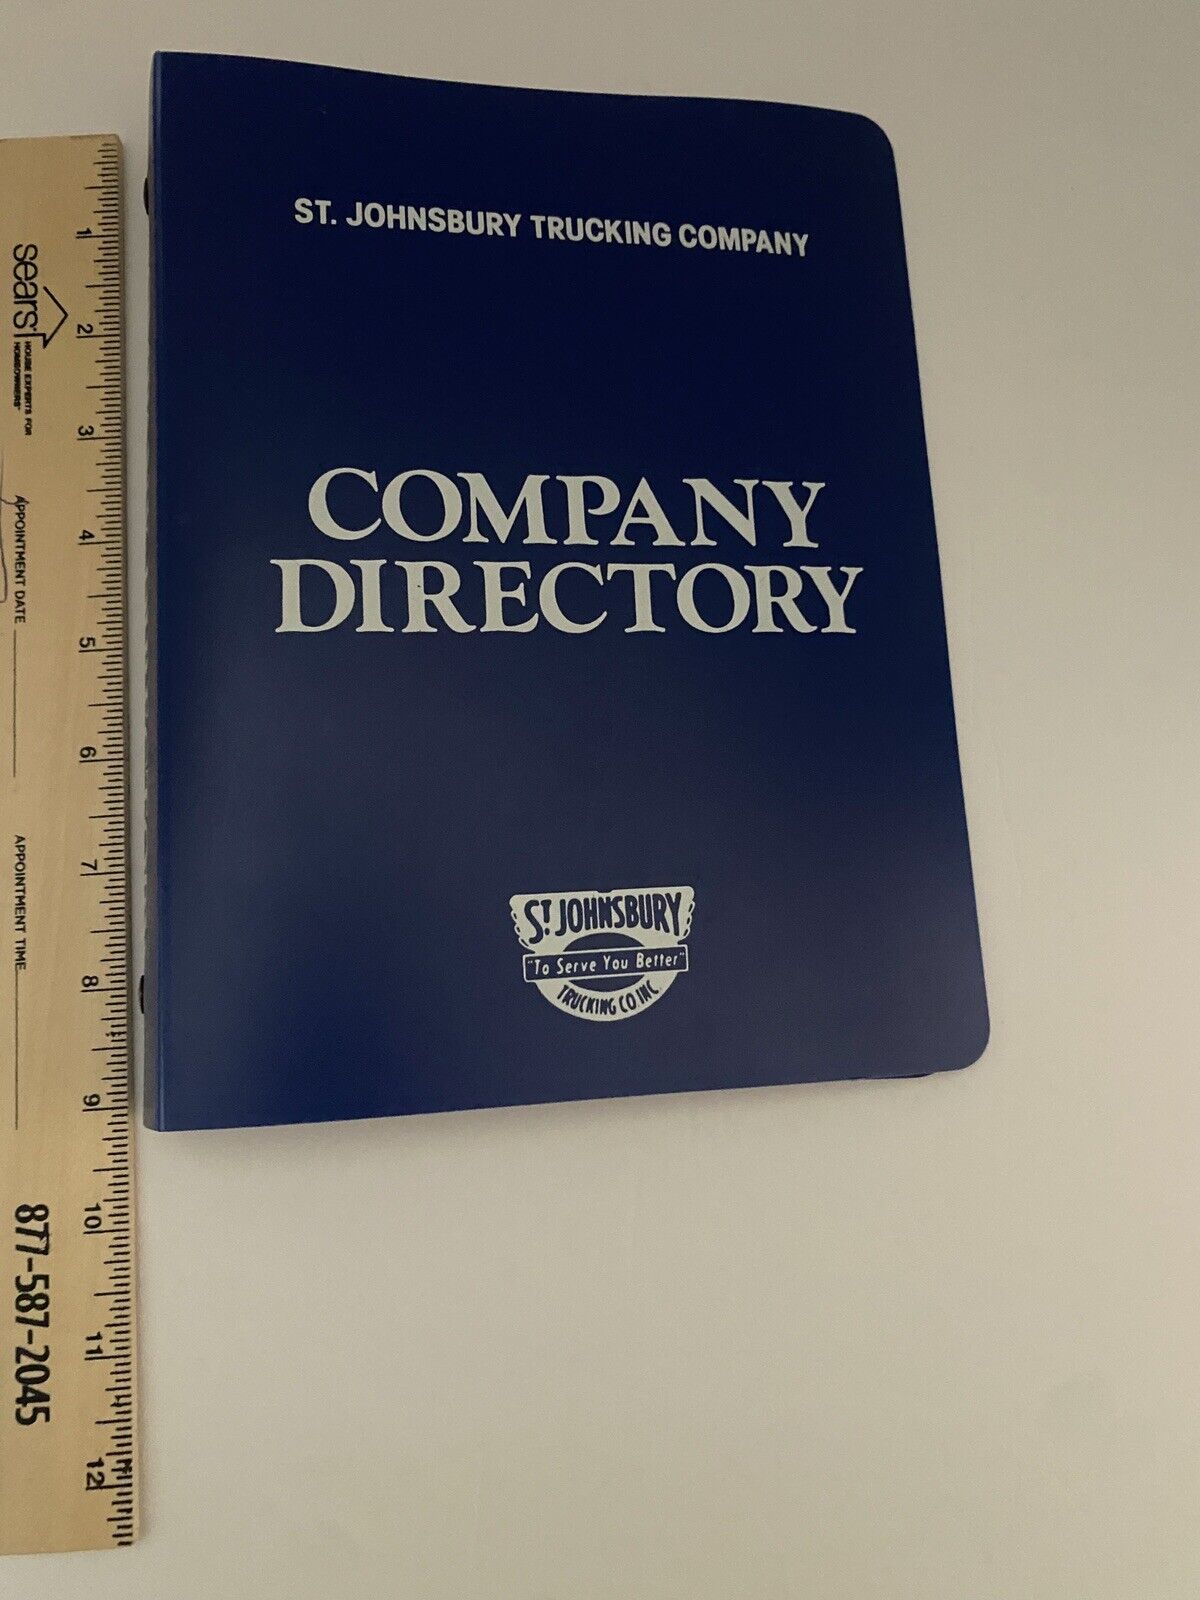 St Johnsbury Trucking Company